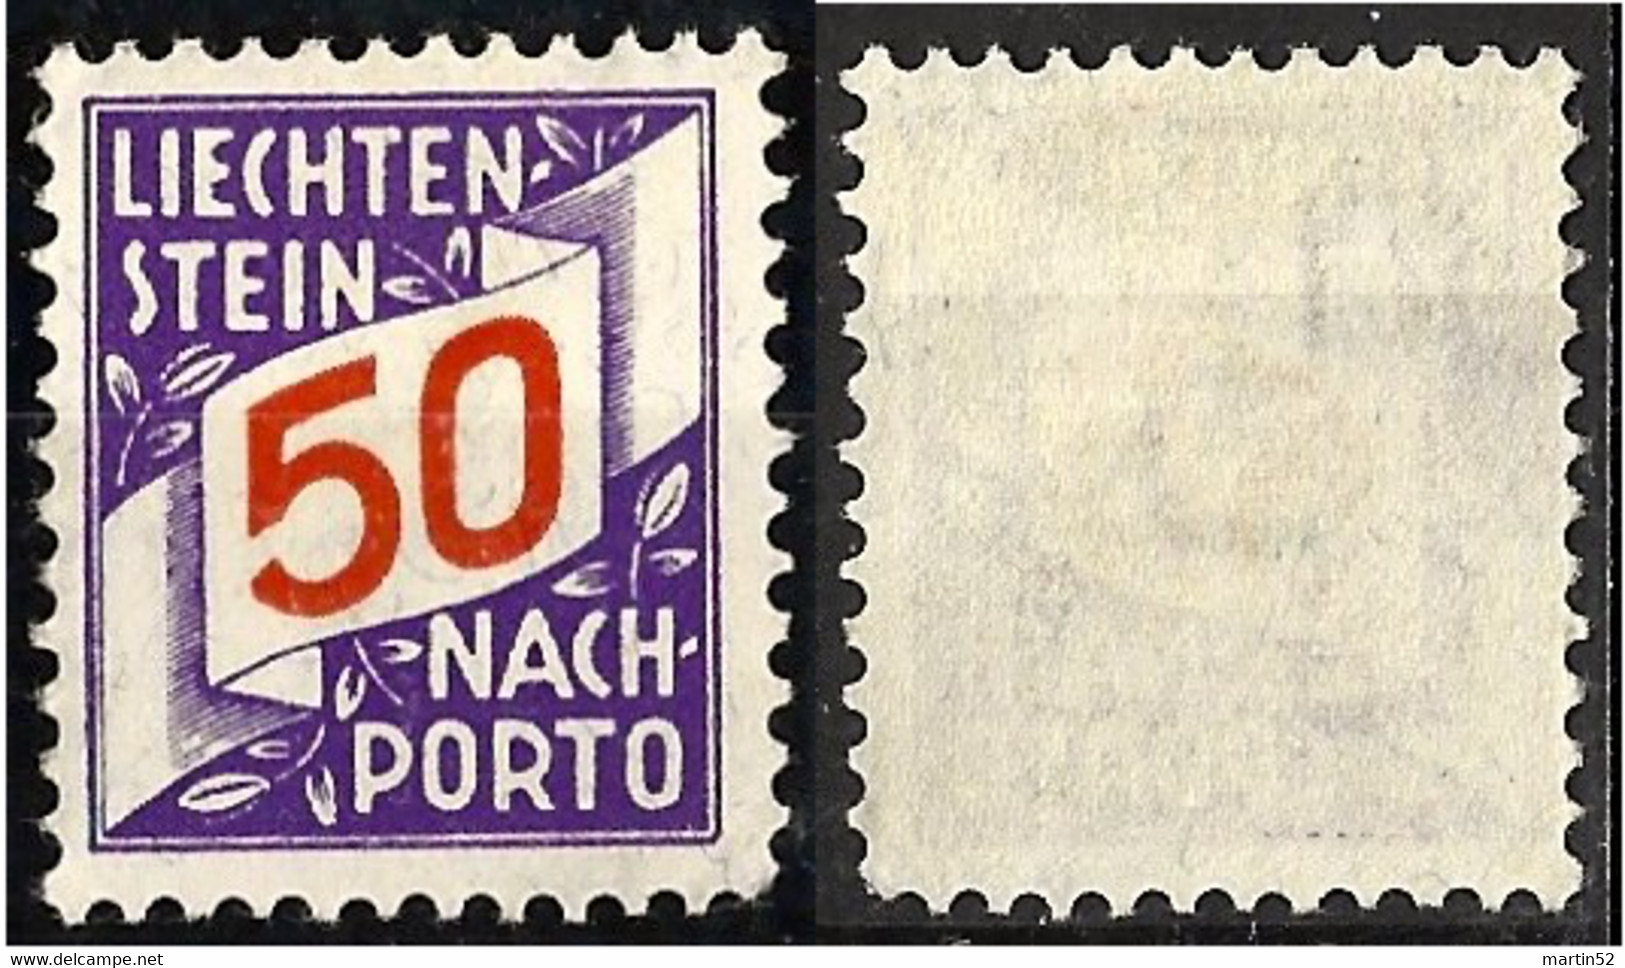 Liechtenstein 1928: ERSTE NACHPORTO-Marke N° 20 (50 Rp) In Schweizer Währung ** Postfrisch MNH (Zu CHF 45.00) - Segnatasse